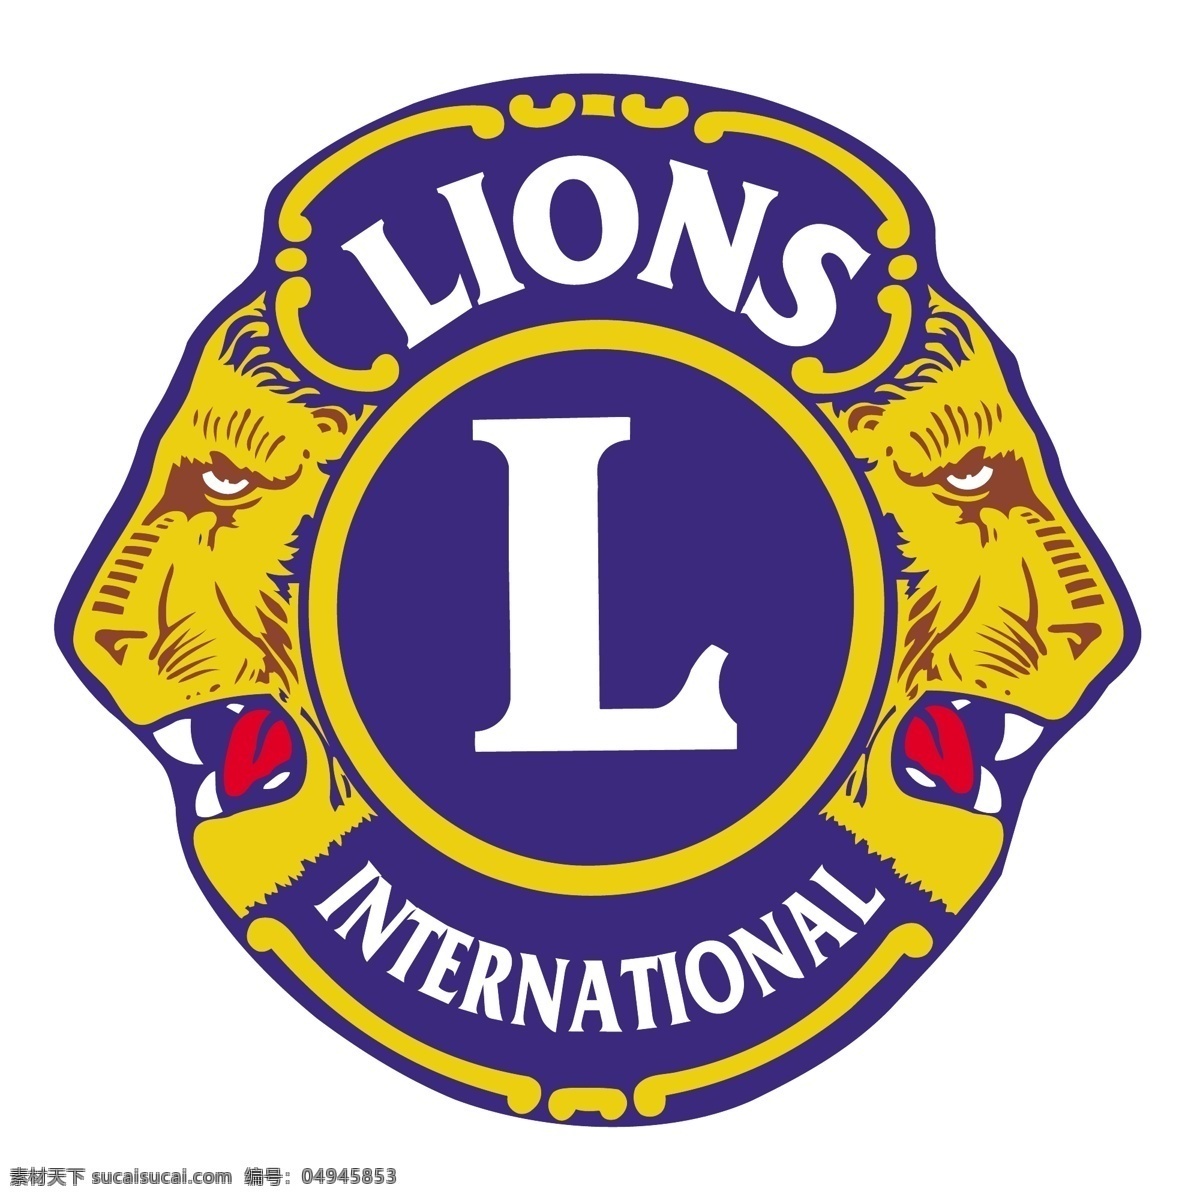 国际狮子会2 国际 狮子 狮子会国际 国际狮子标志 矢量 标志 国际向量 国际0 标志国际狮子 狮子会 矢量图 建筑家居